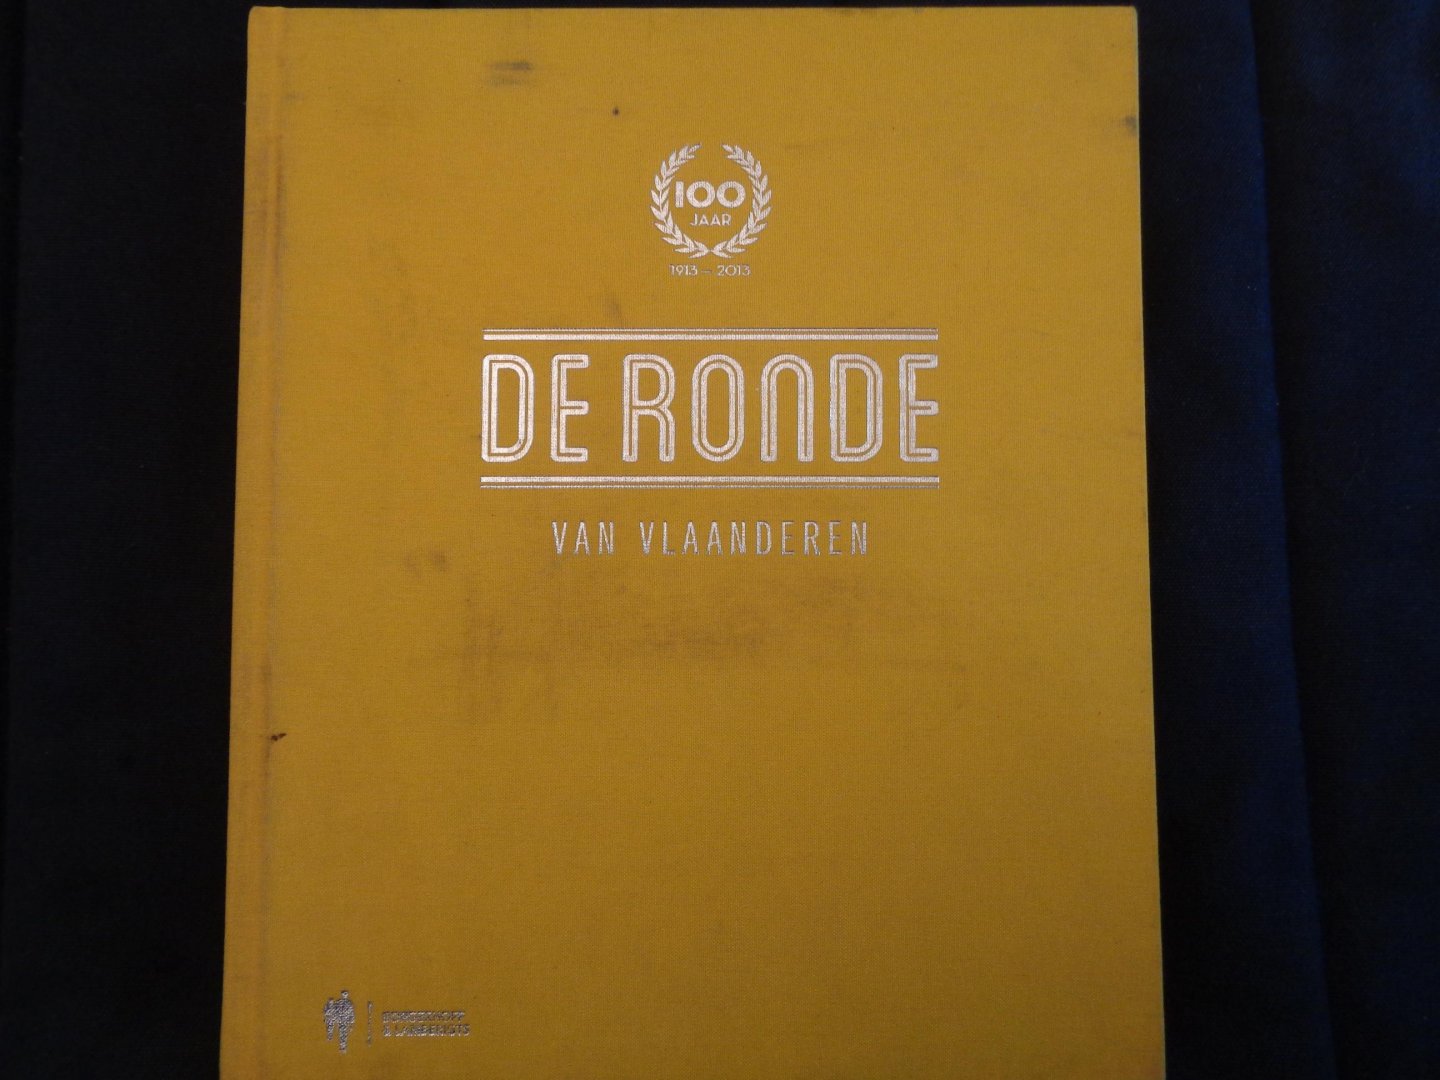 Schoonjans, Luc, Vandenbon, Geert - 100 Jaar De Ronde van Vlaanderen / 1913 - 2013